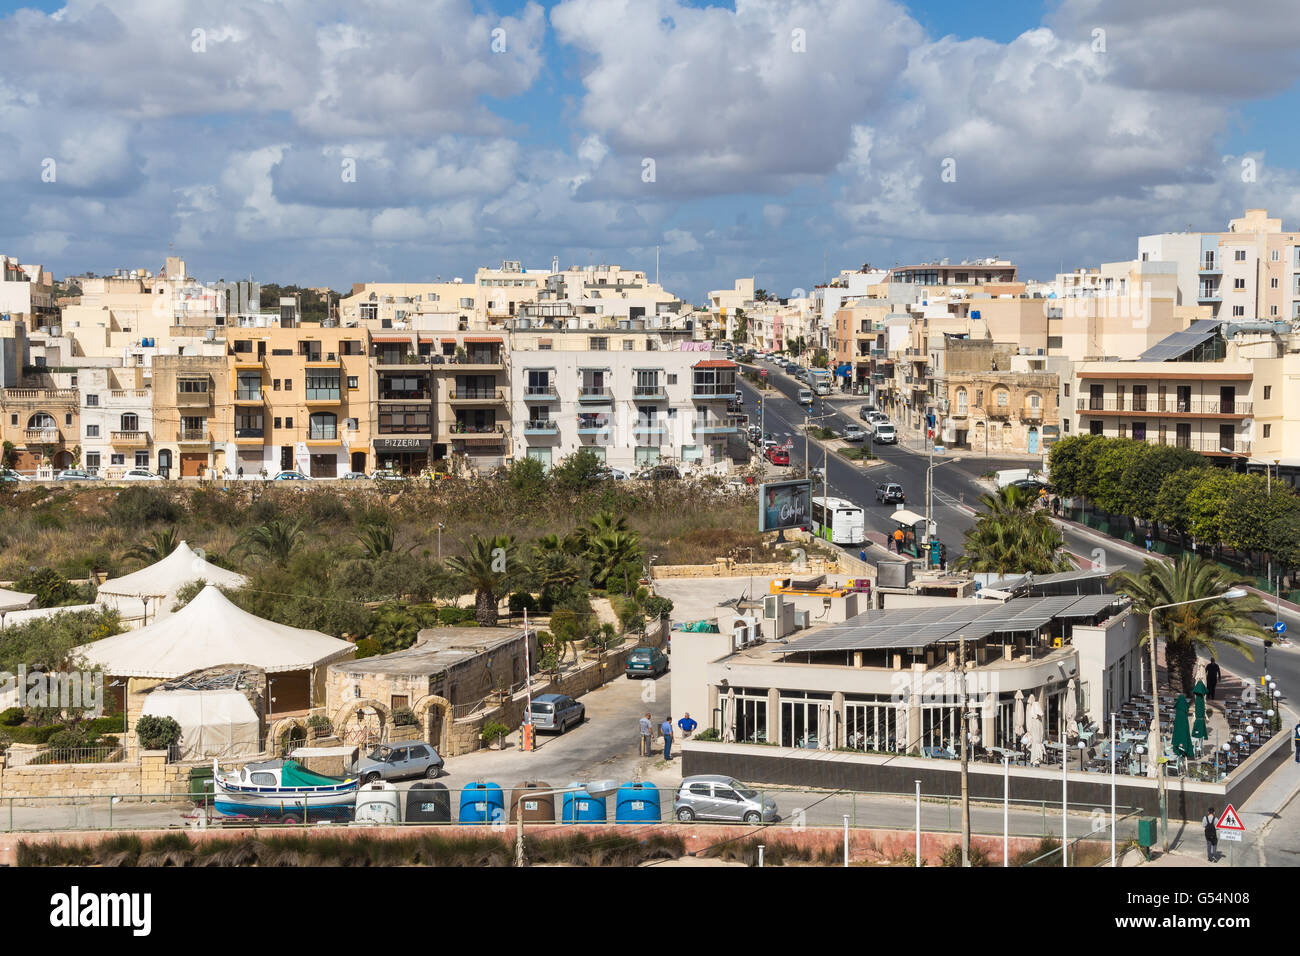 Marsascala ville sur l'île de Malte. Maisons d'habitation et d'une route avec des voitures. De nombreux nuages sur le ciel bleu. Banque D'Images